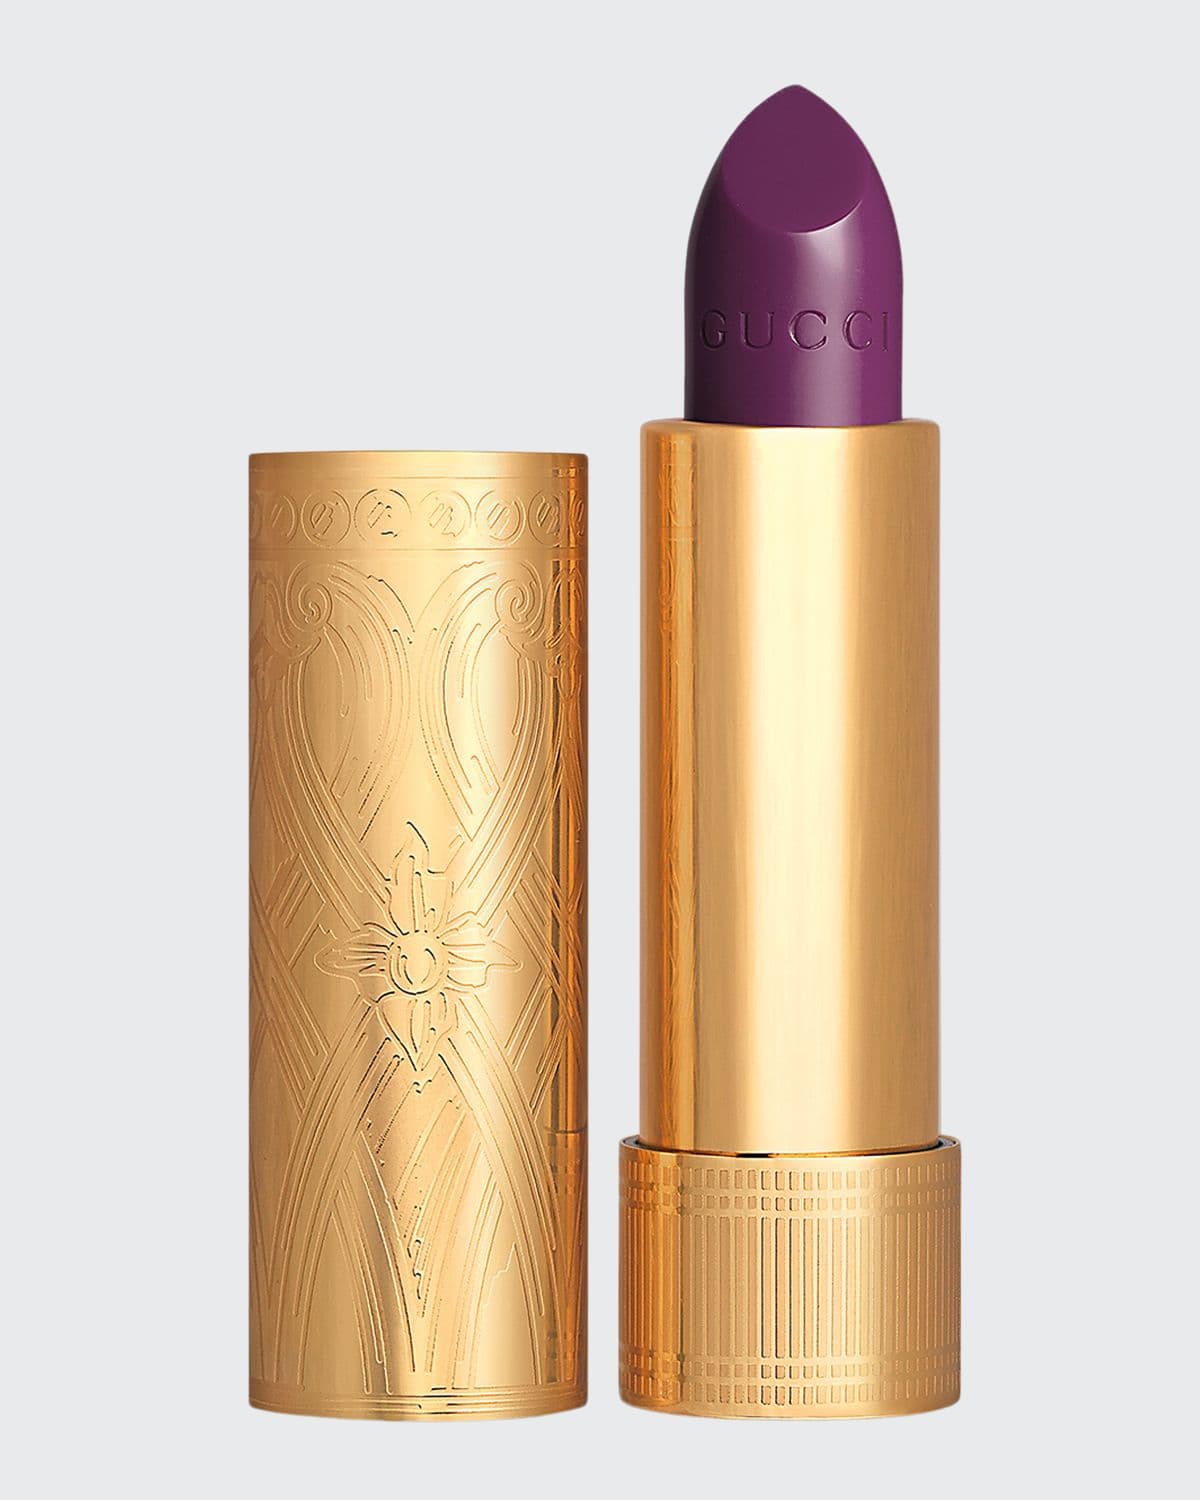 Gucci Rouge &#224 L&#232vres Satin Lipstick In 601 Fleur De Lis